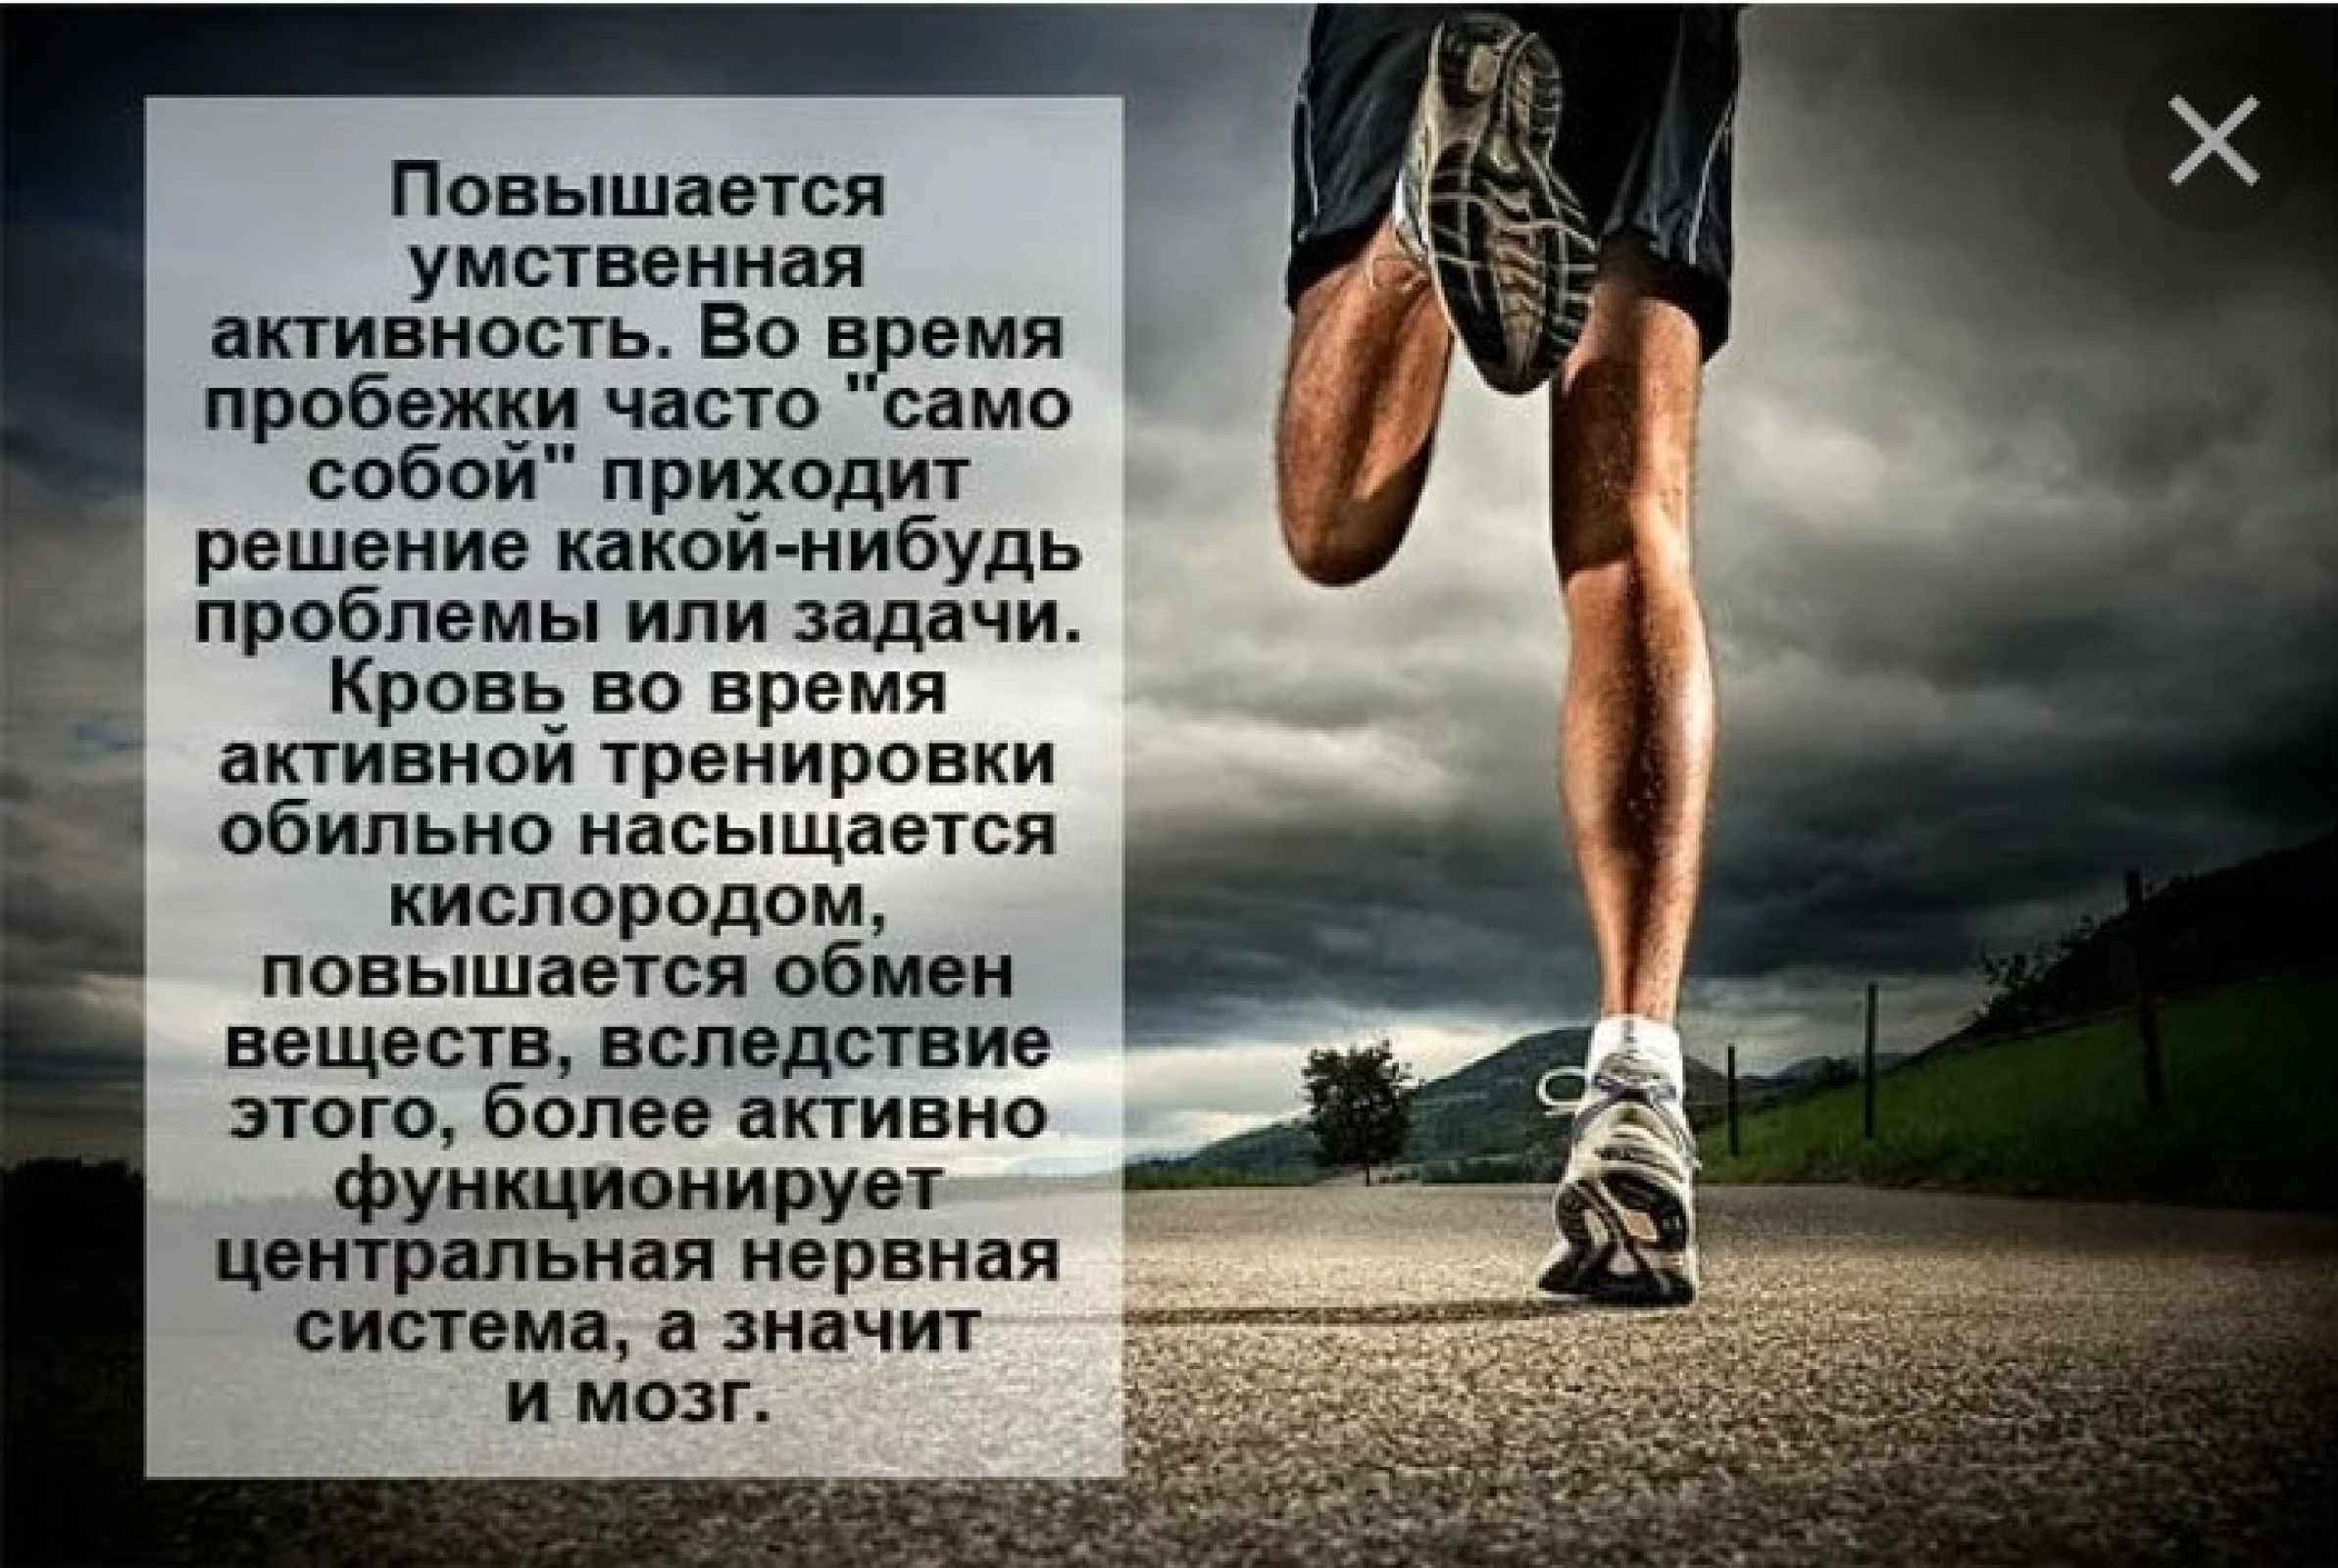 Бежим текст три. Цитаты про бег. Высказывания про бег. Спортивные цитаты. Афоризмы про бег.